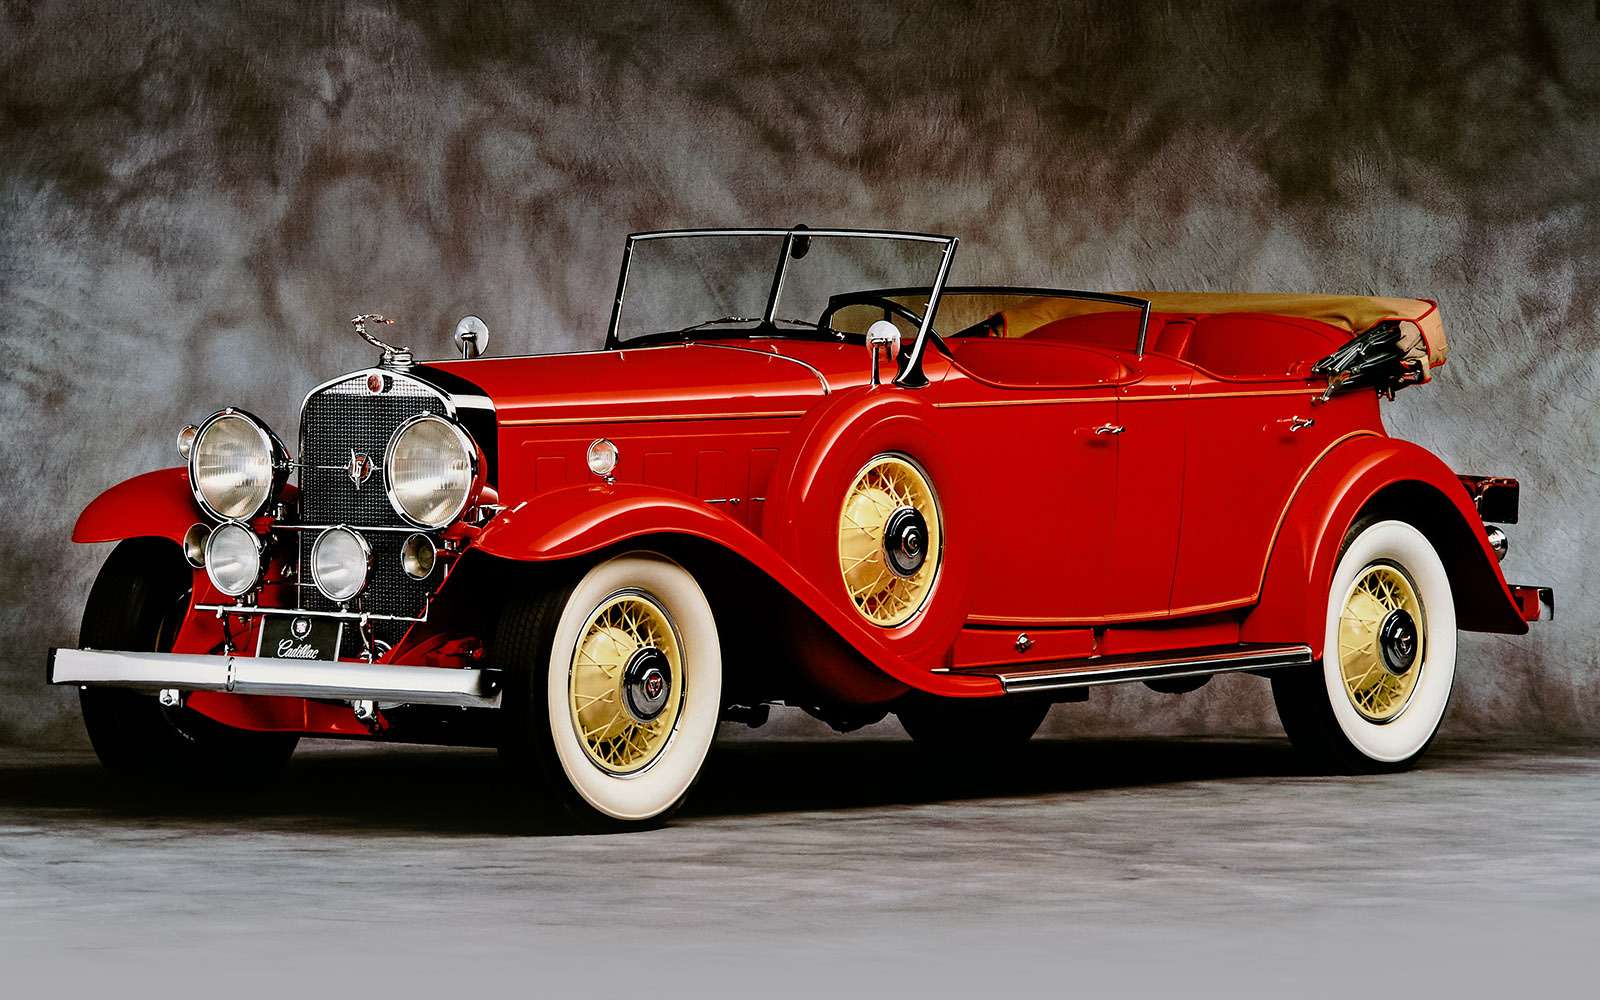 Типичный классический автомобиль первой половины 1930‑х, например Cadillac V16, обязан быть огромным, богато отделанным, мощным и, конечно же, построенным на массивной раме.